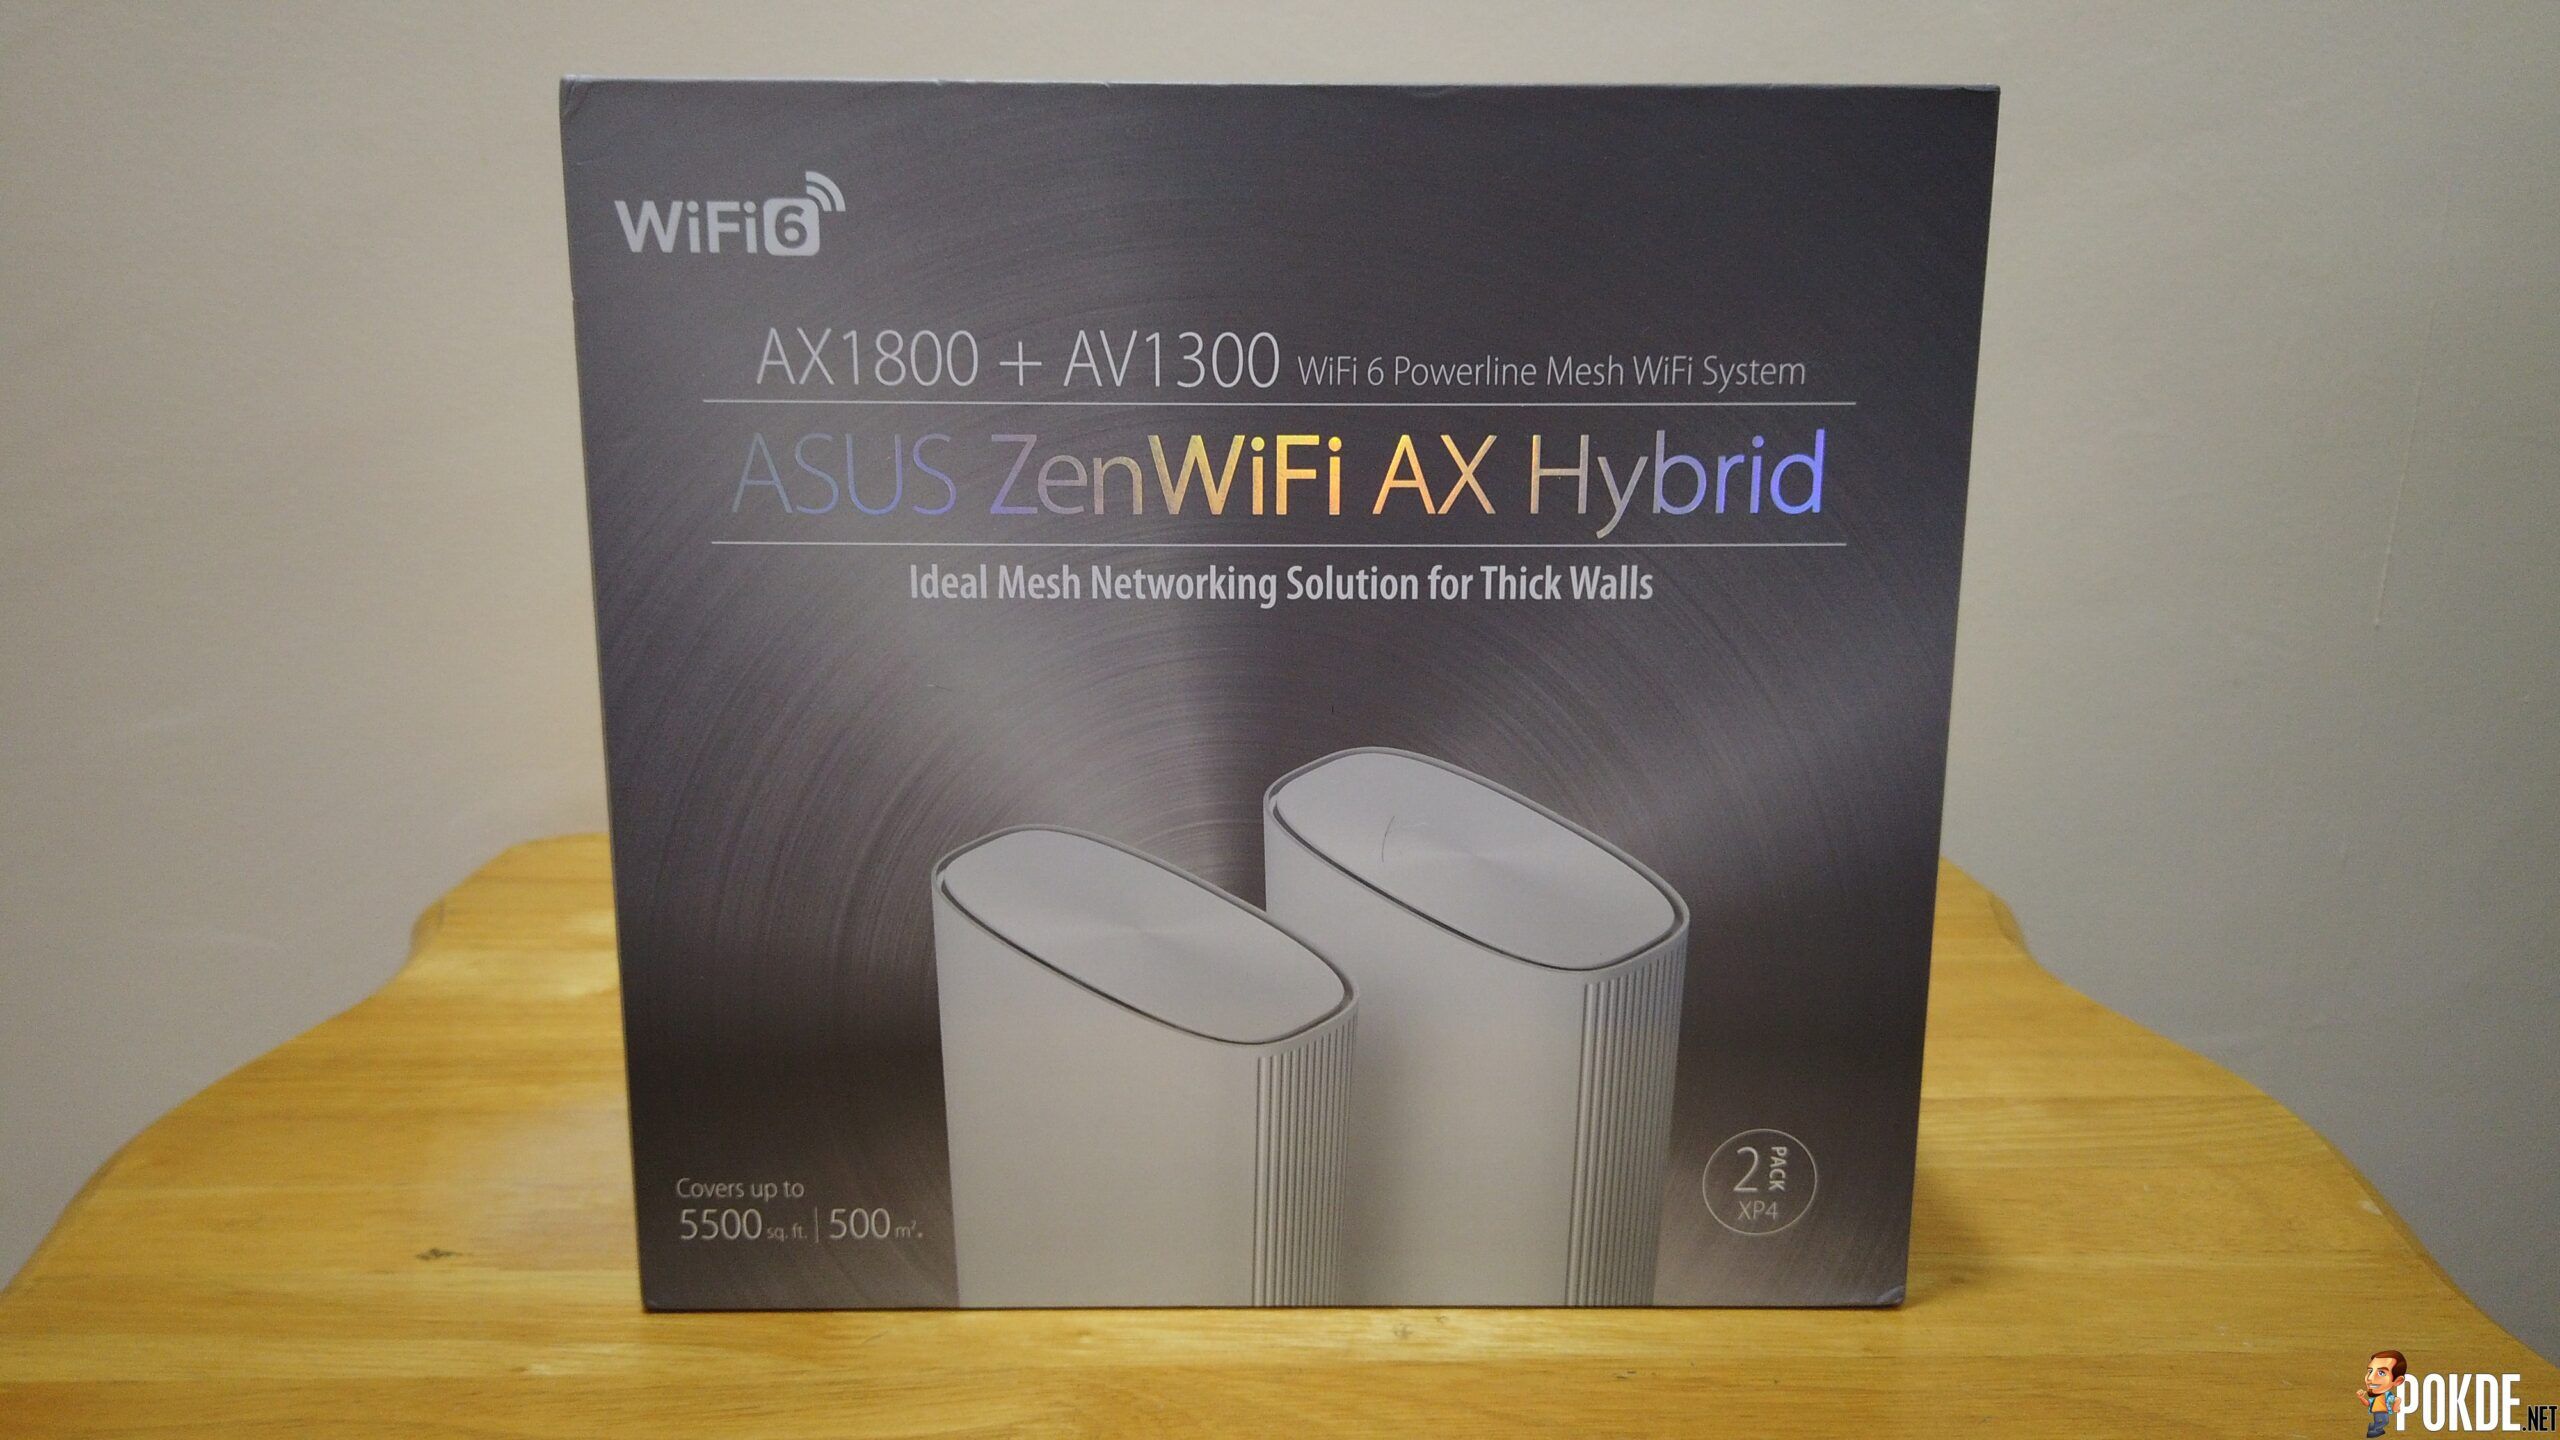 ASUS ZenWiFi AX Hybrid (XP4) Mesh Review - 5,500 sqft Wi-Fi Coverage 19